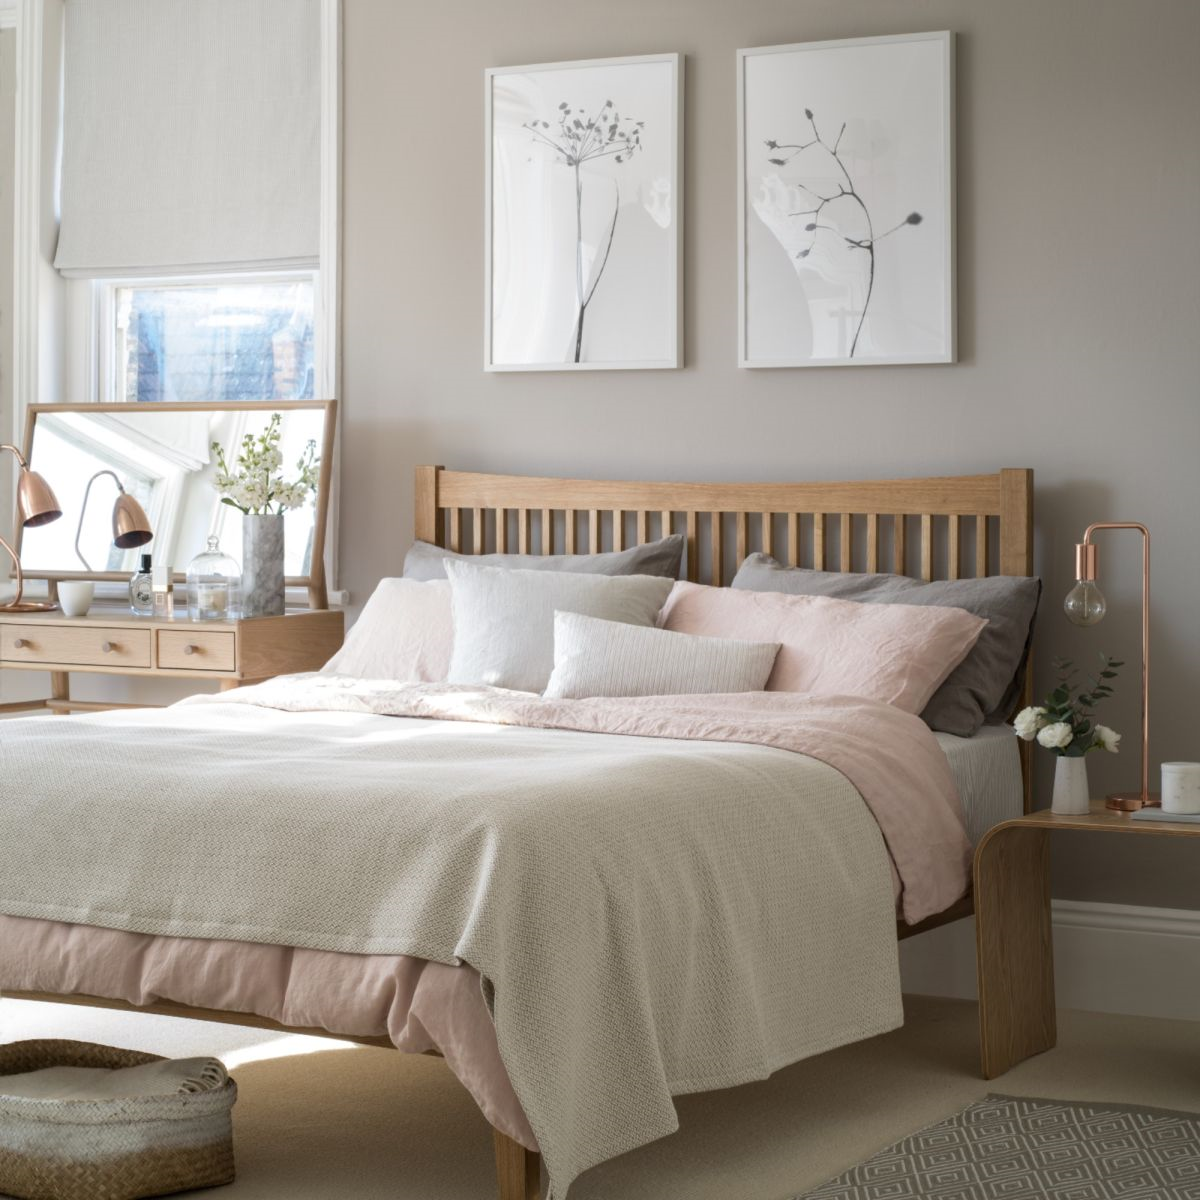 schlafzimmer farben und welche wandgestaltung den schlaf positiv beeinflusst